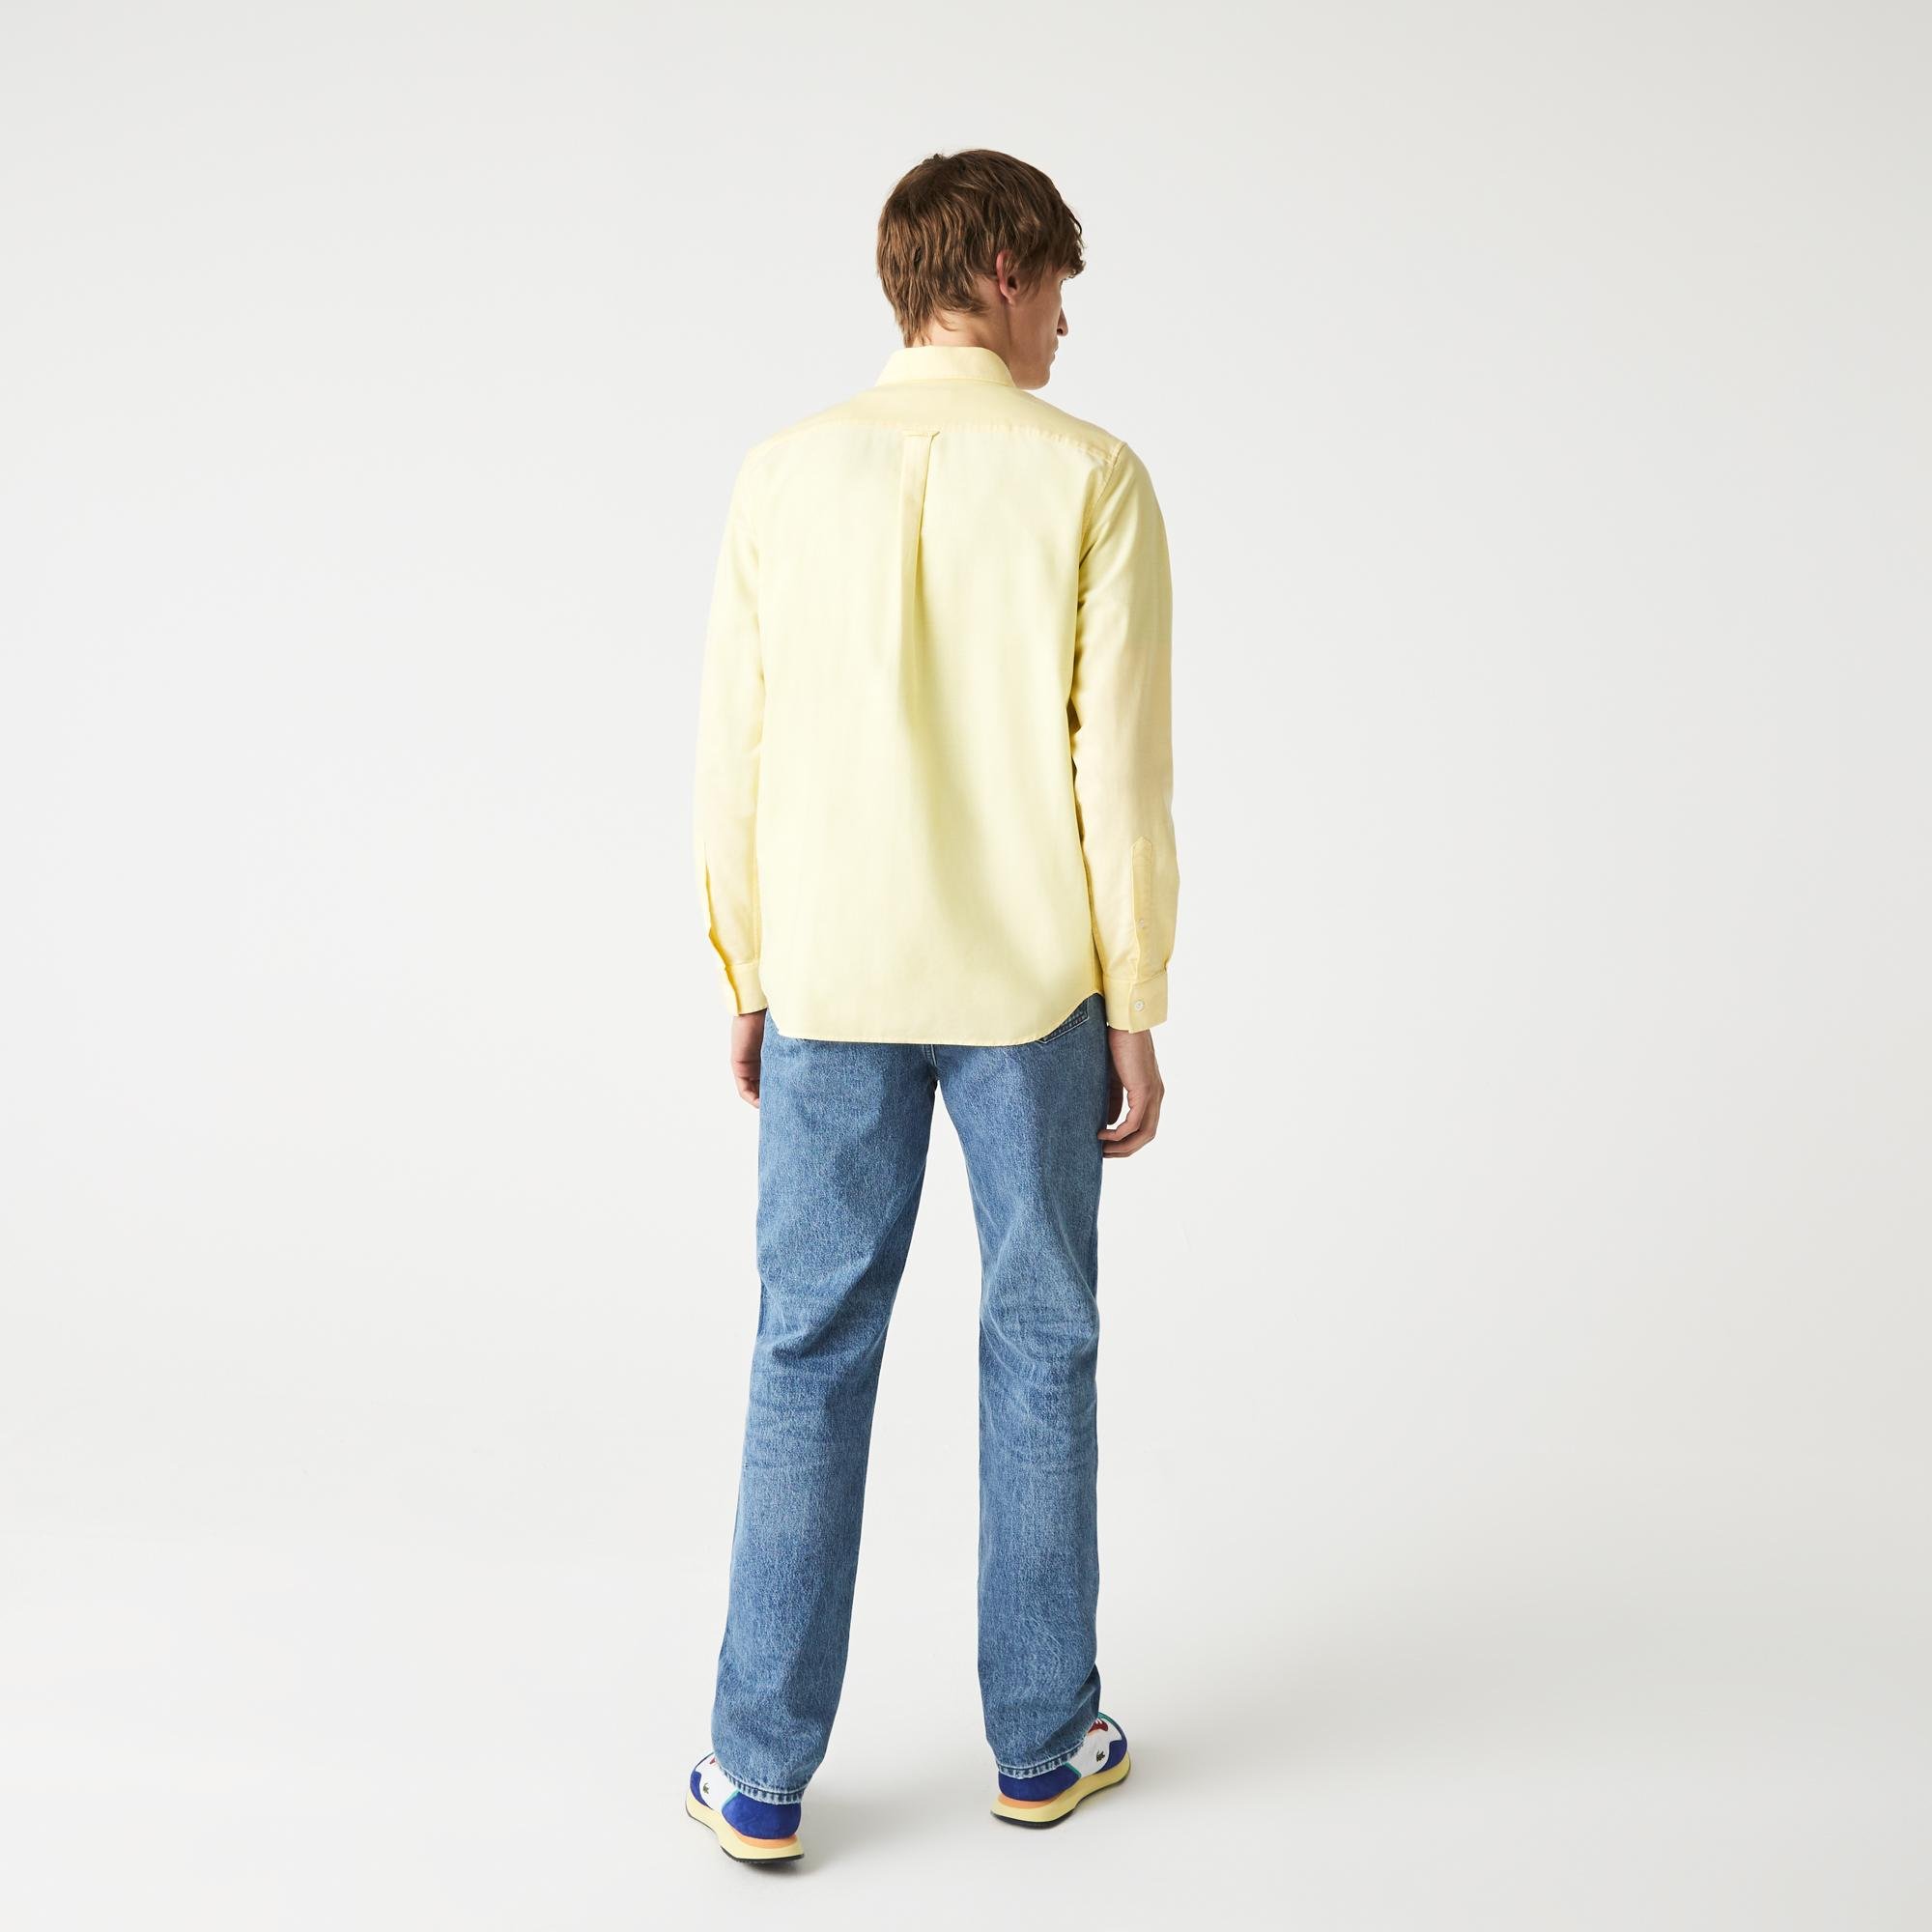 Lacoste Men's Regular Fit Oxford Cotton Shirt